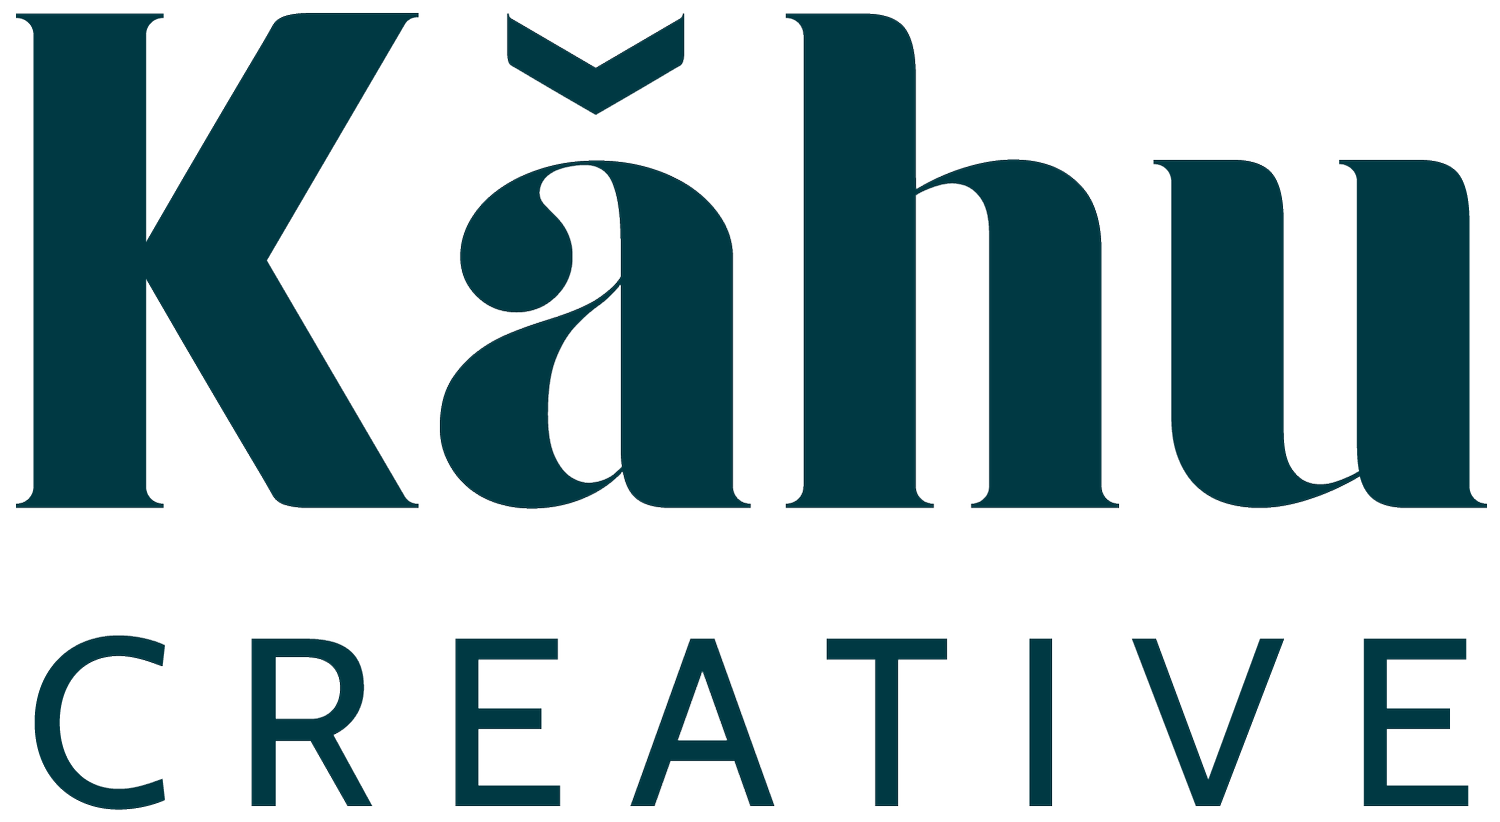 Kāhu Creative